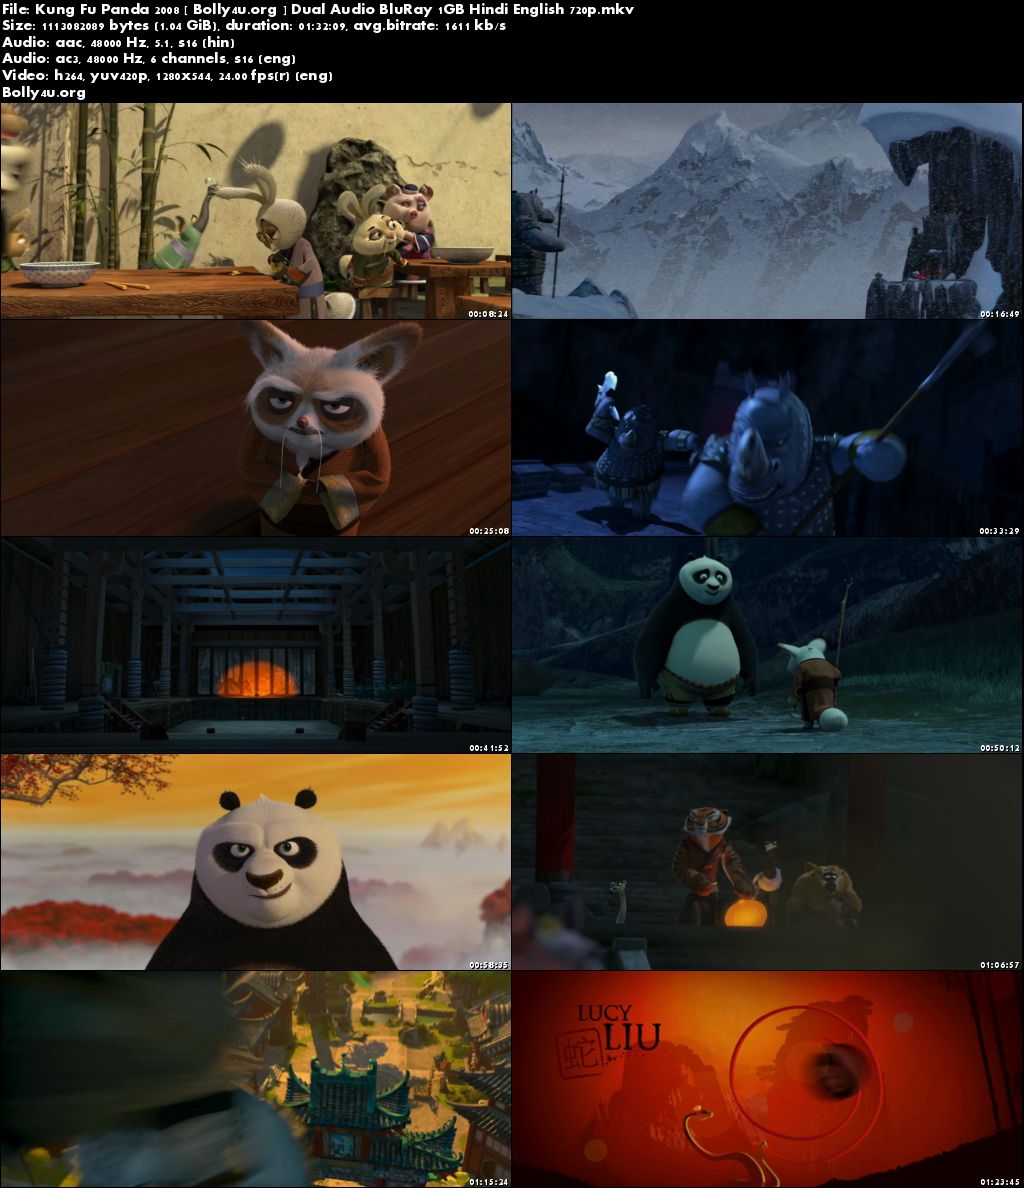 kung fu panda 2 full movie free download hd